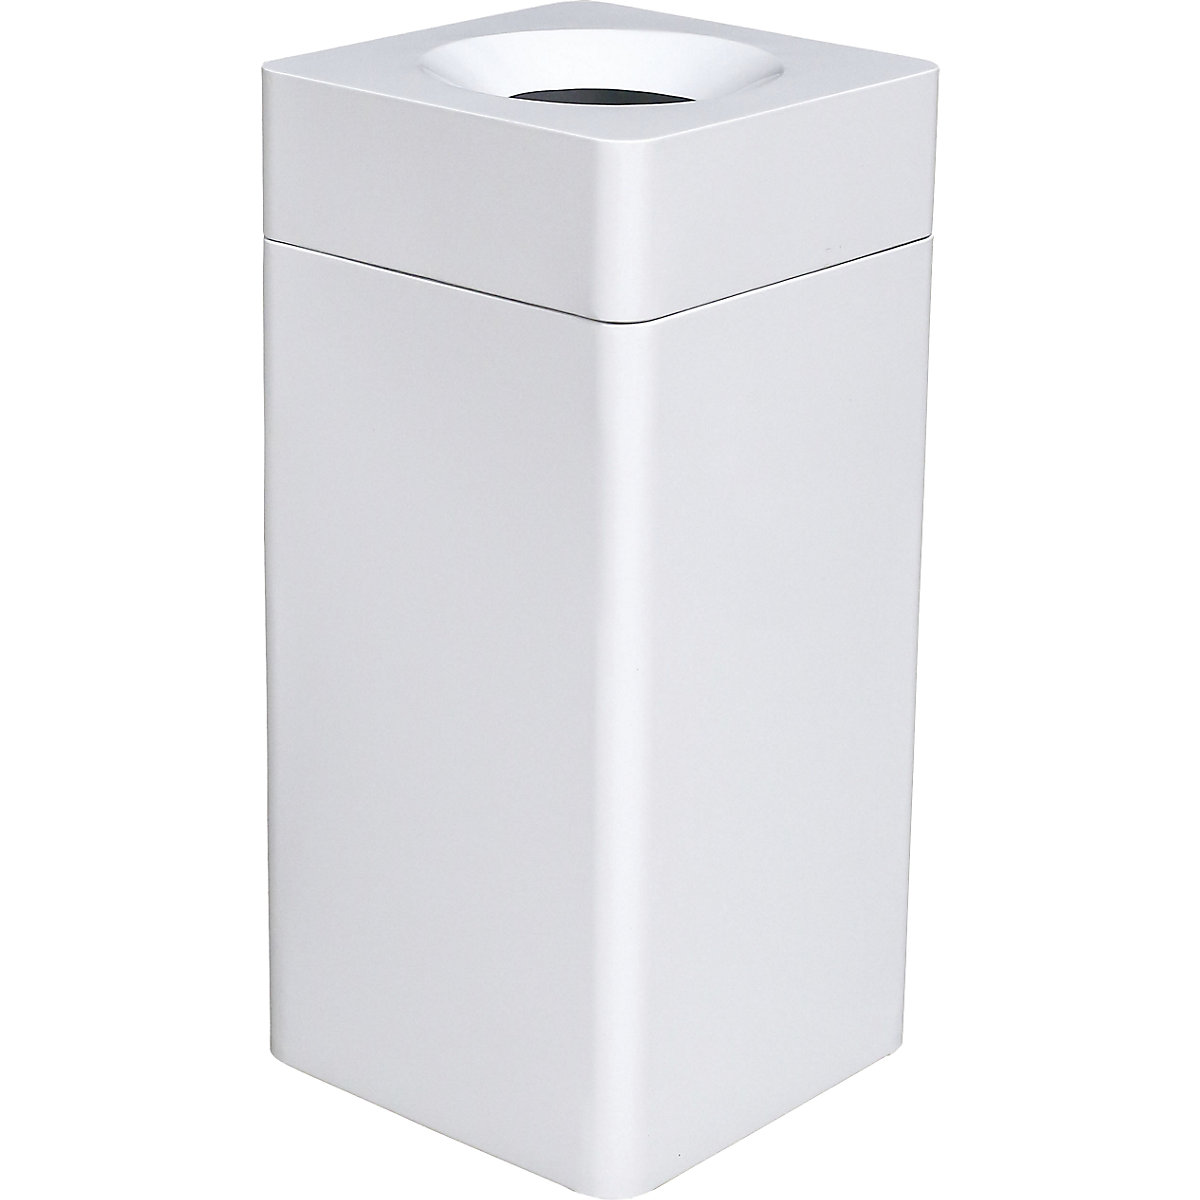 Abfallbehälter, quadratisch, Volumen 42 l, BxHxT 350 x 760 x 350 mm, weiß